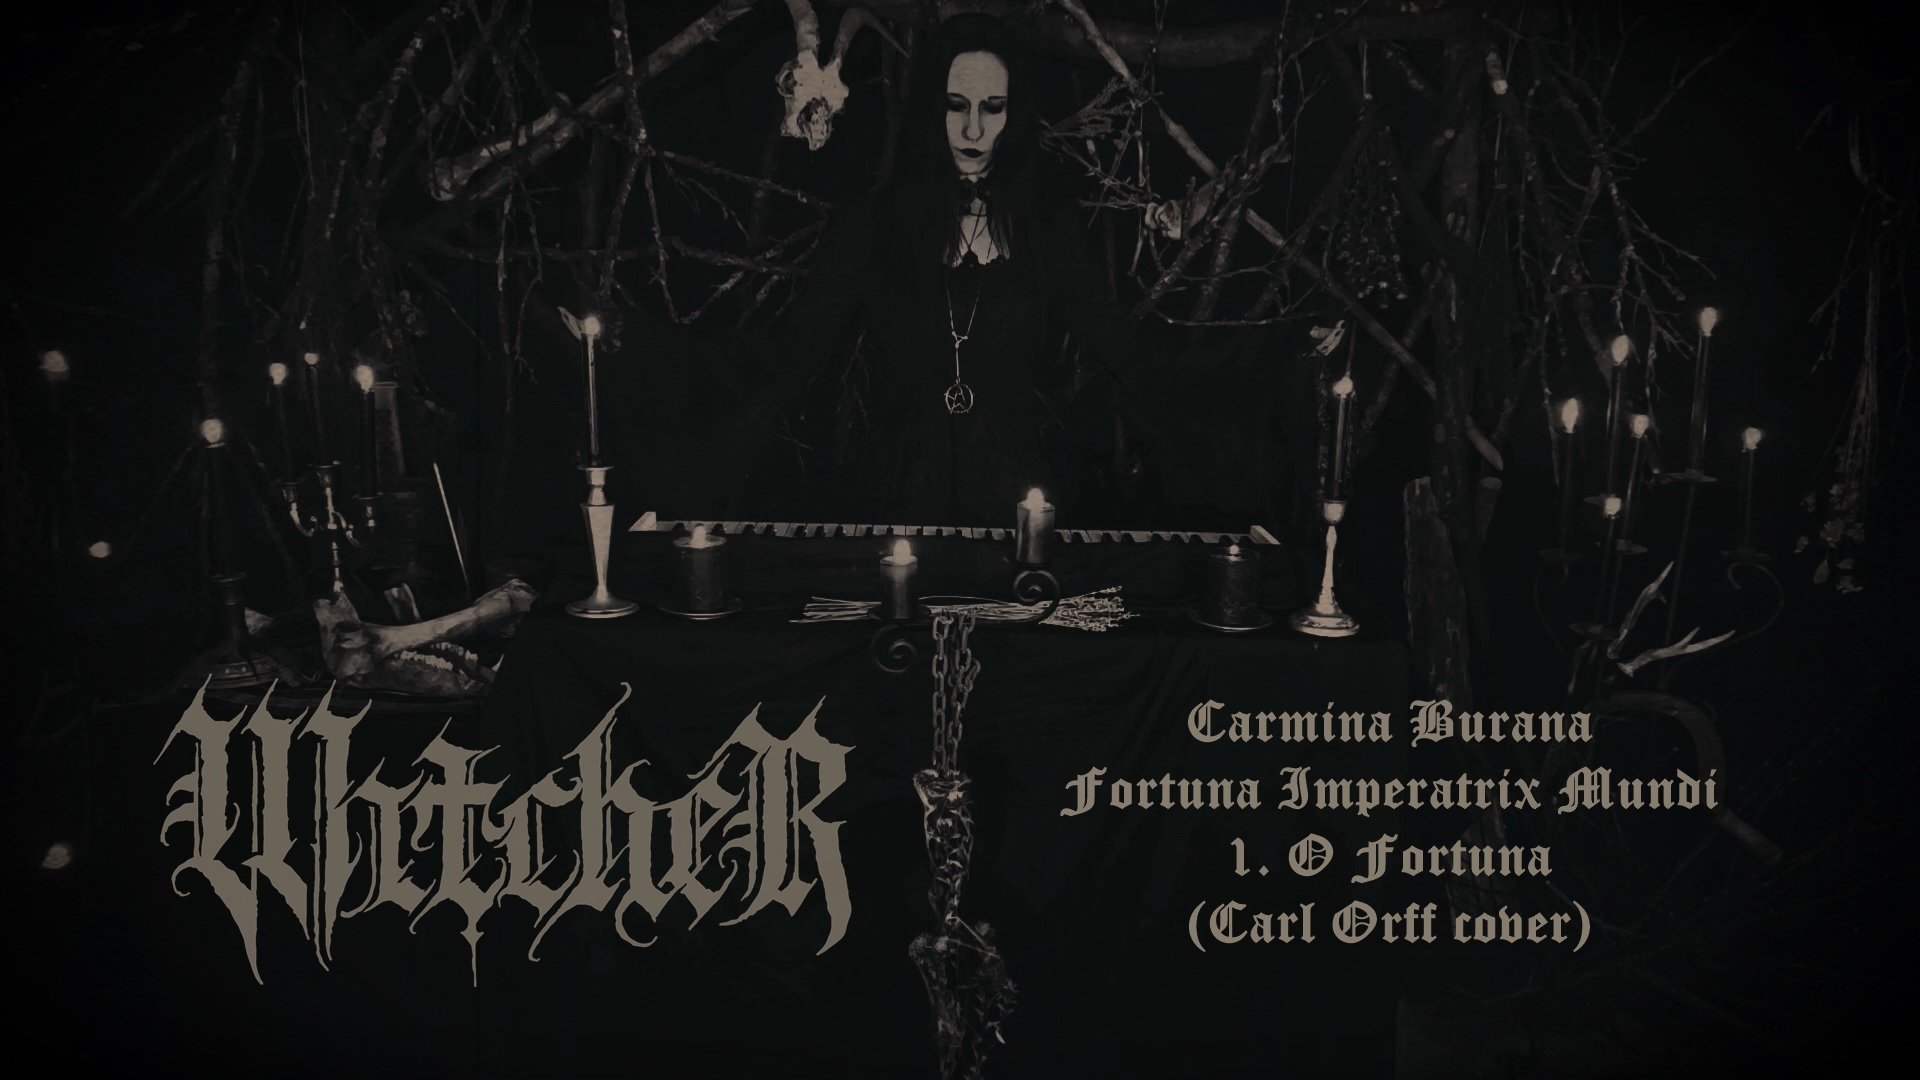 Read more about the article Carmina Burana black metal feldolgozás a Boszorkányszimfóniák EP-ről! Carmina Burana black metal cover of the Boszorkányszimfóniák EP!